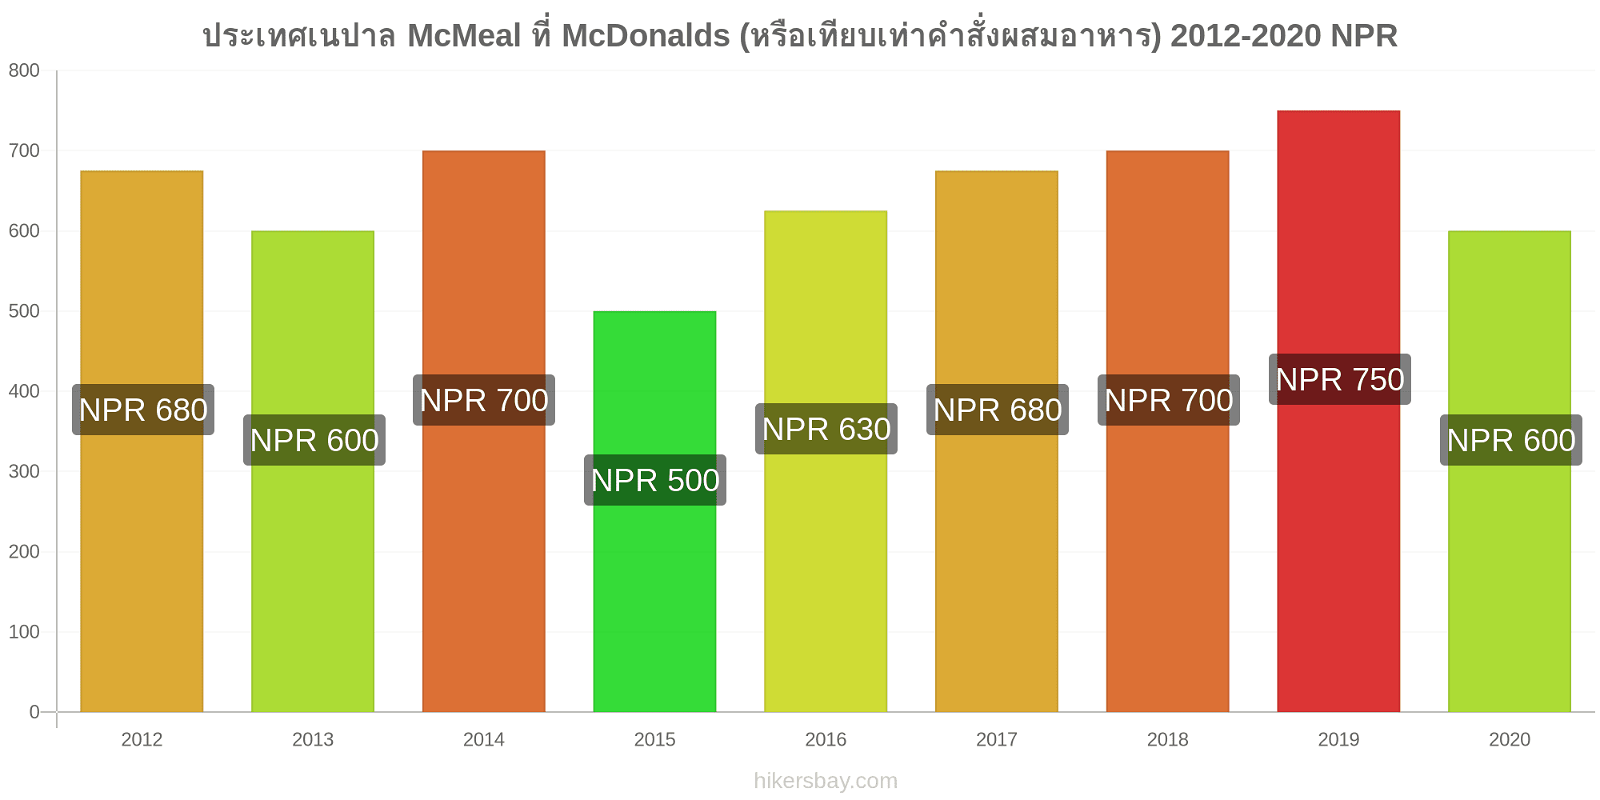 ประเทศเนปาล การเปลี่ยนแปลงราคา McMeal ที่ McDonalds (หรือเทียบเท่าคำสั่งผสมอาหาร) hikersbay.com